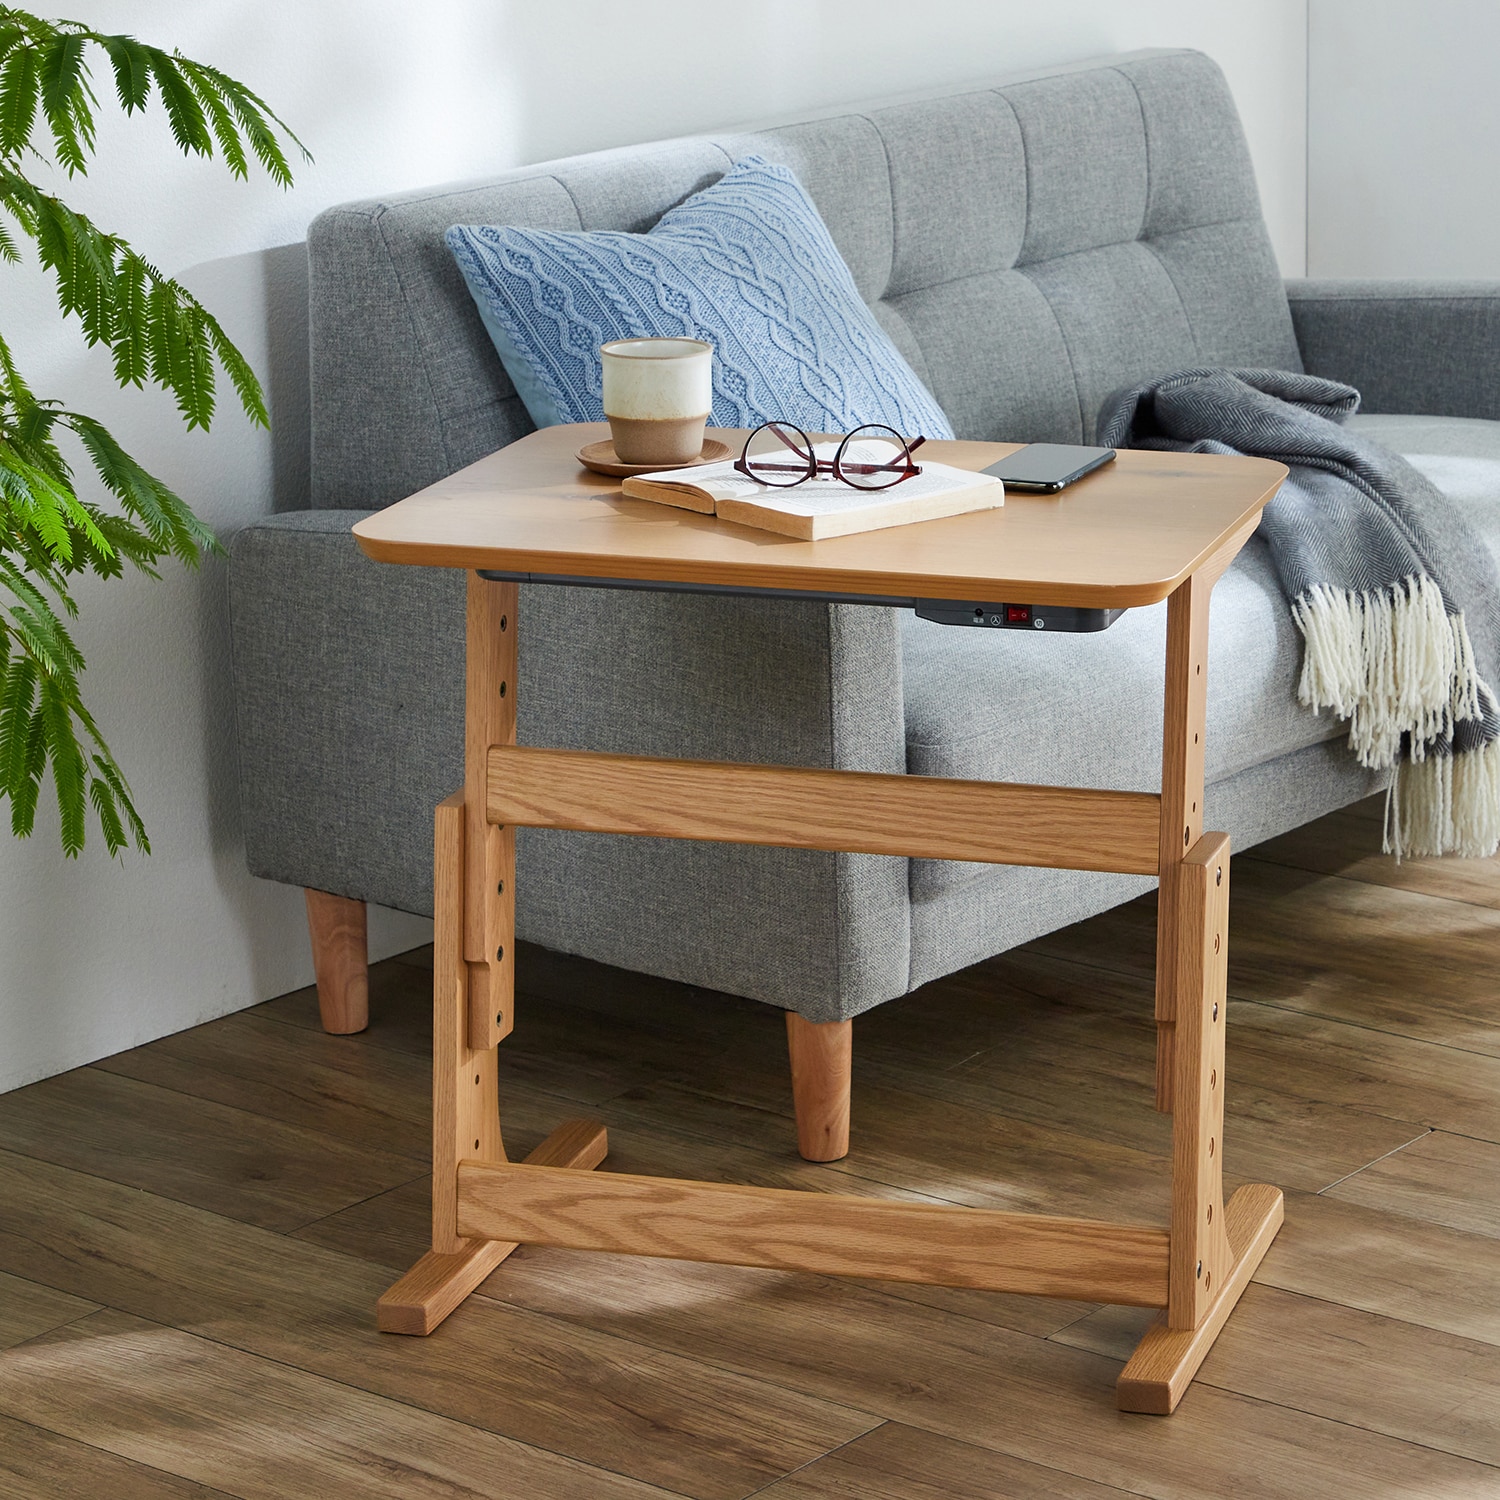 ベルメゾン 高さ調整可能なソファー用こたつテーブル(- -): ベルメゾン